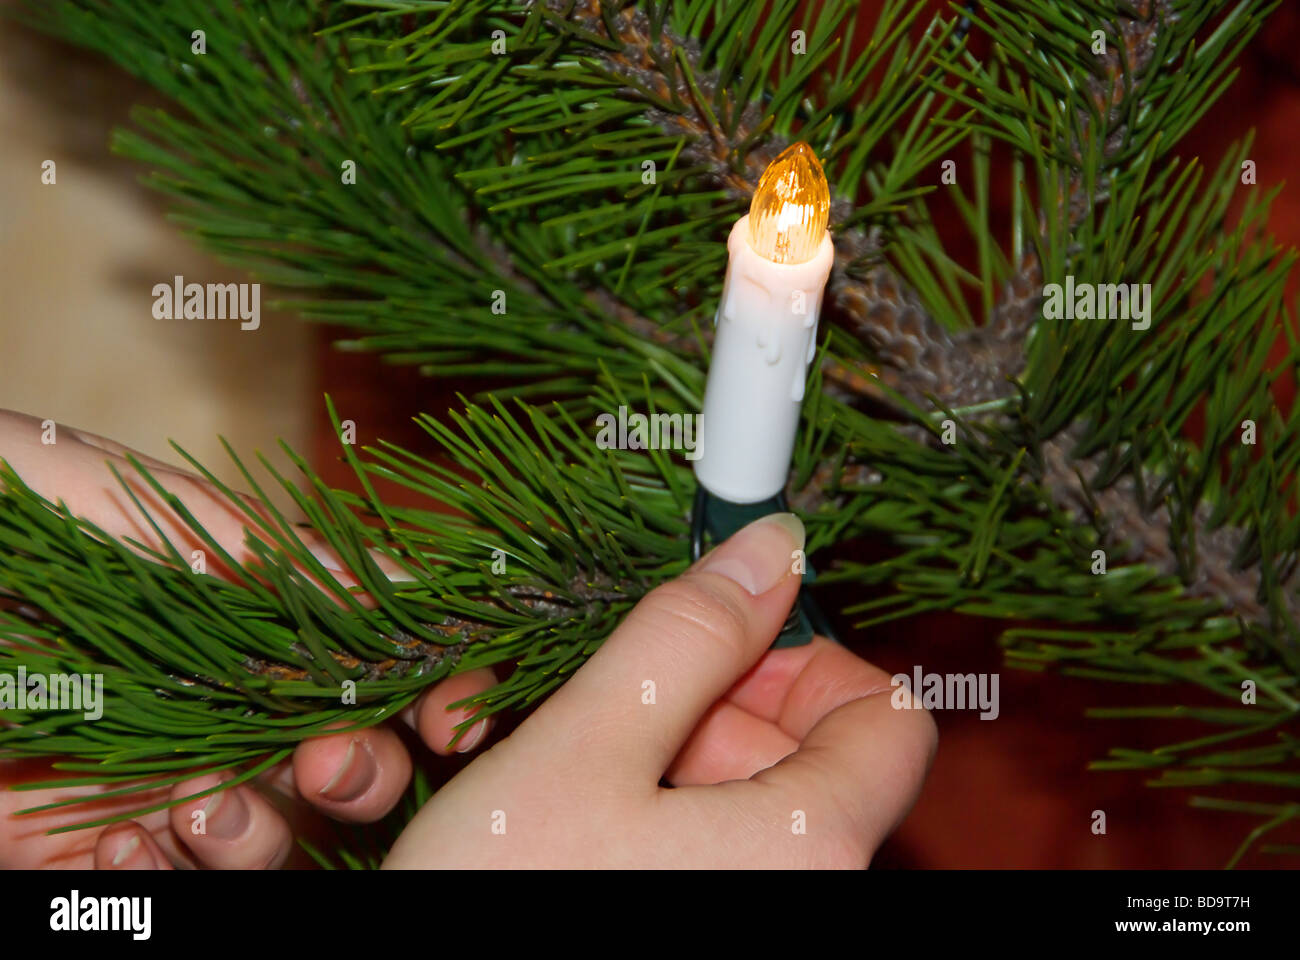 Weihnachtsbaum christmas tree 04 Stock Photo